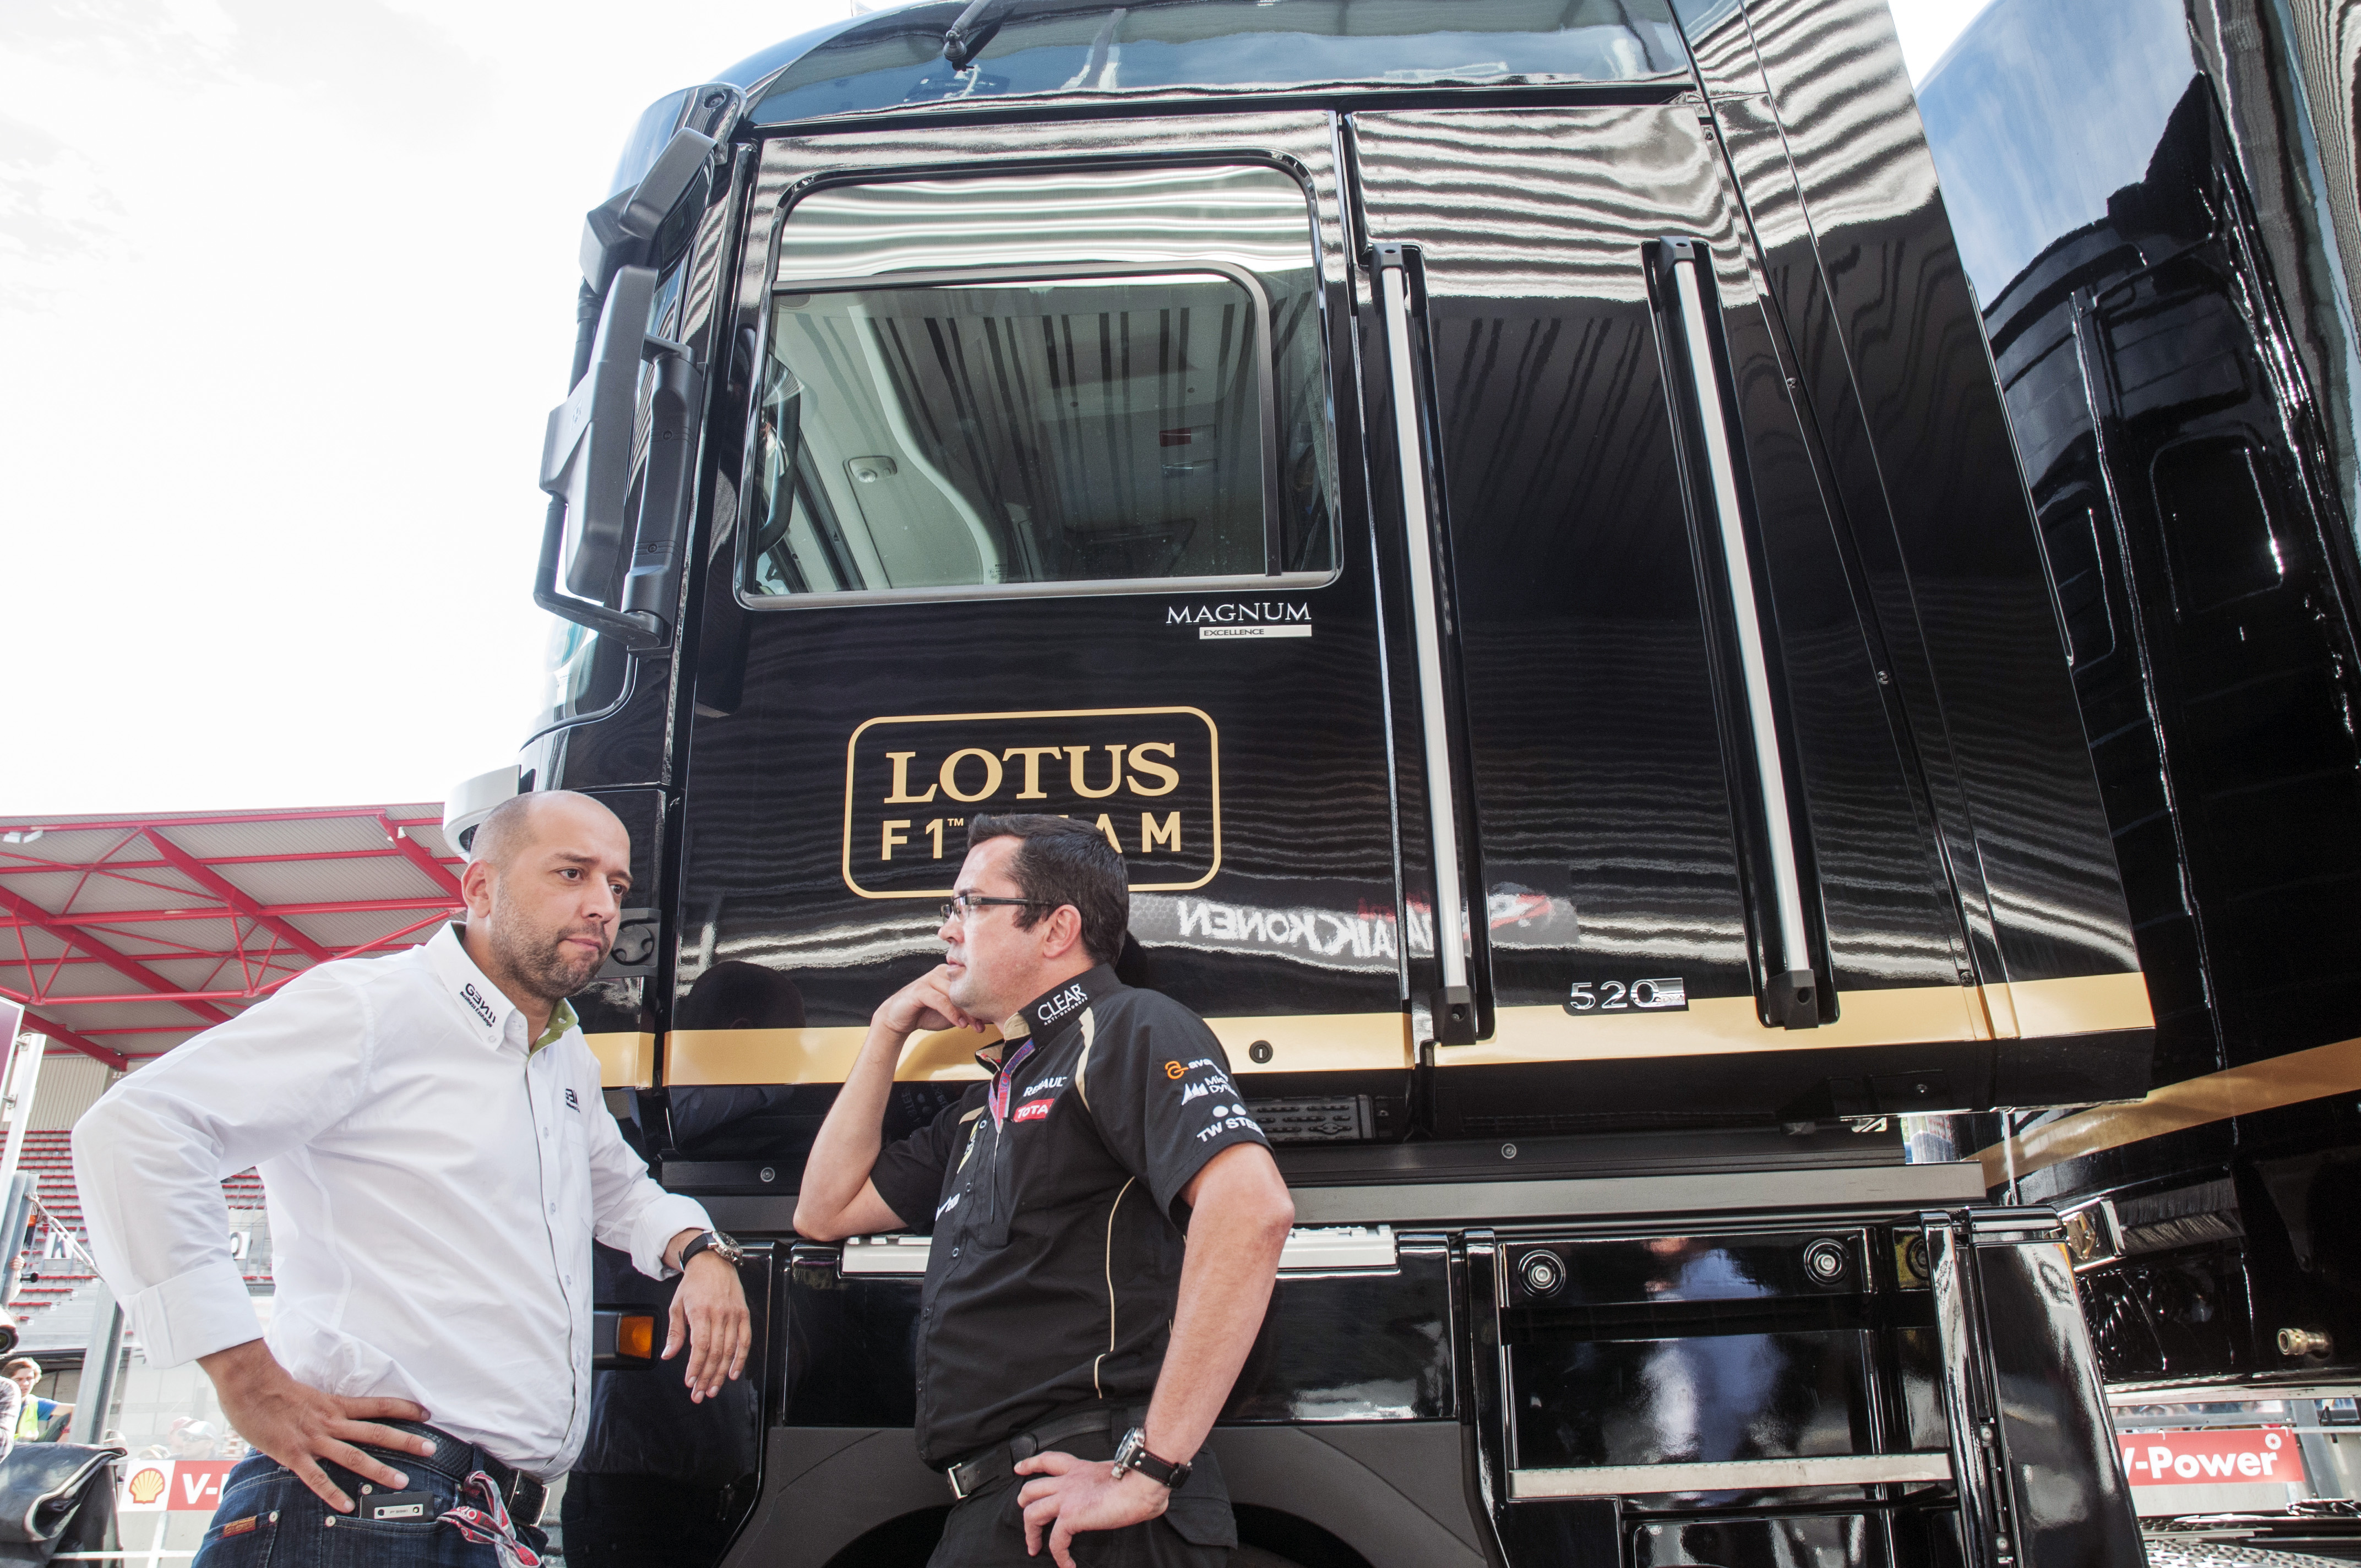 Lotus neemt dubbele DRS niet mee naar Monza